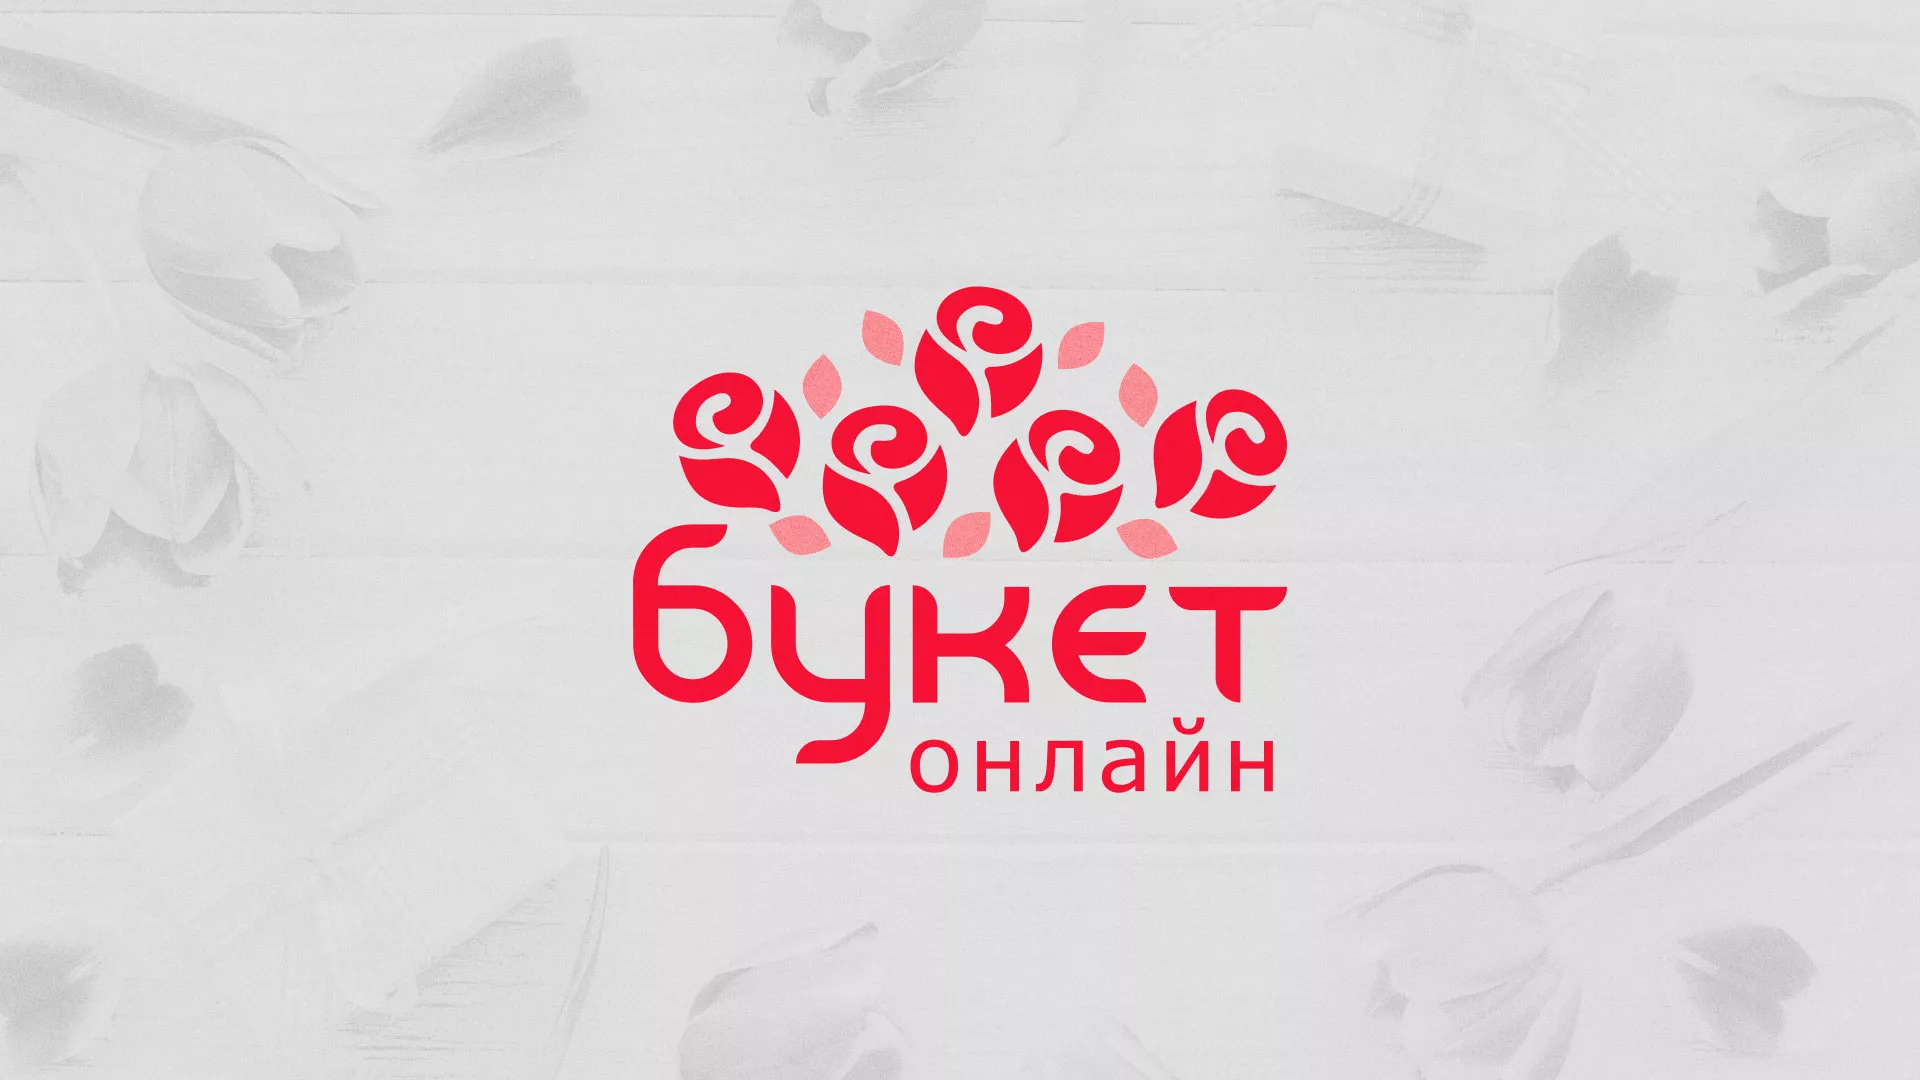 Создание интернет-магазина «Букет-онлайн» по цветам в Каменске-Уральском